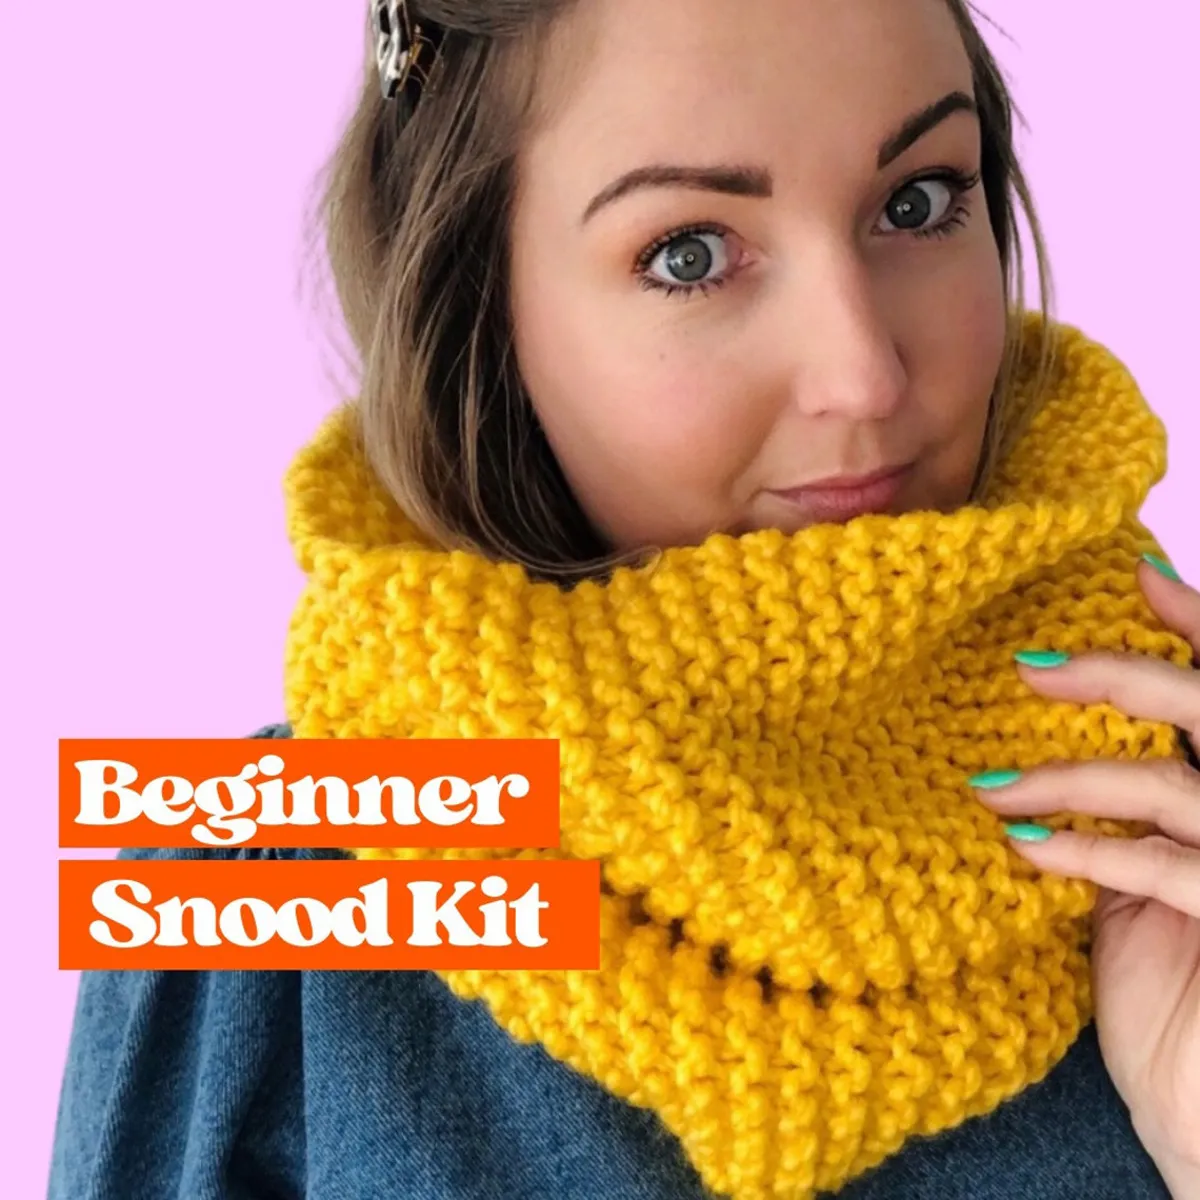 The 12 Best Knitting Kits for Beginners (2023) - Sarah Maker